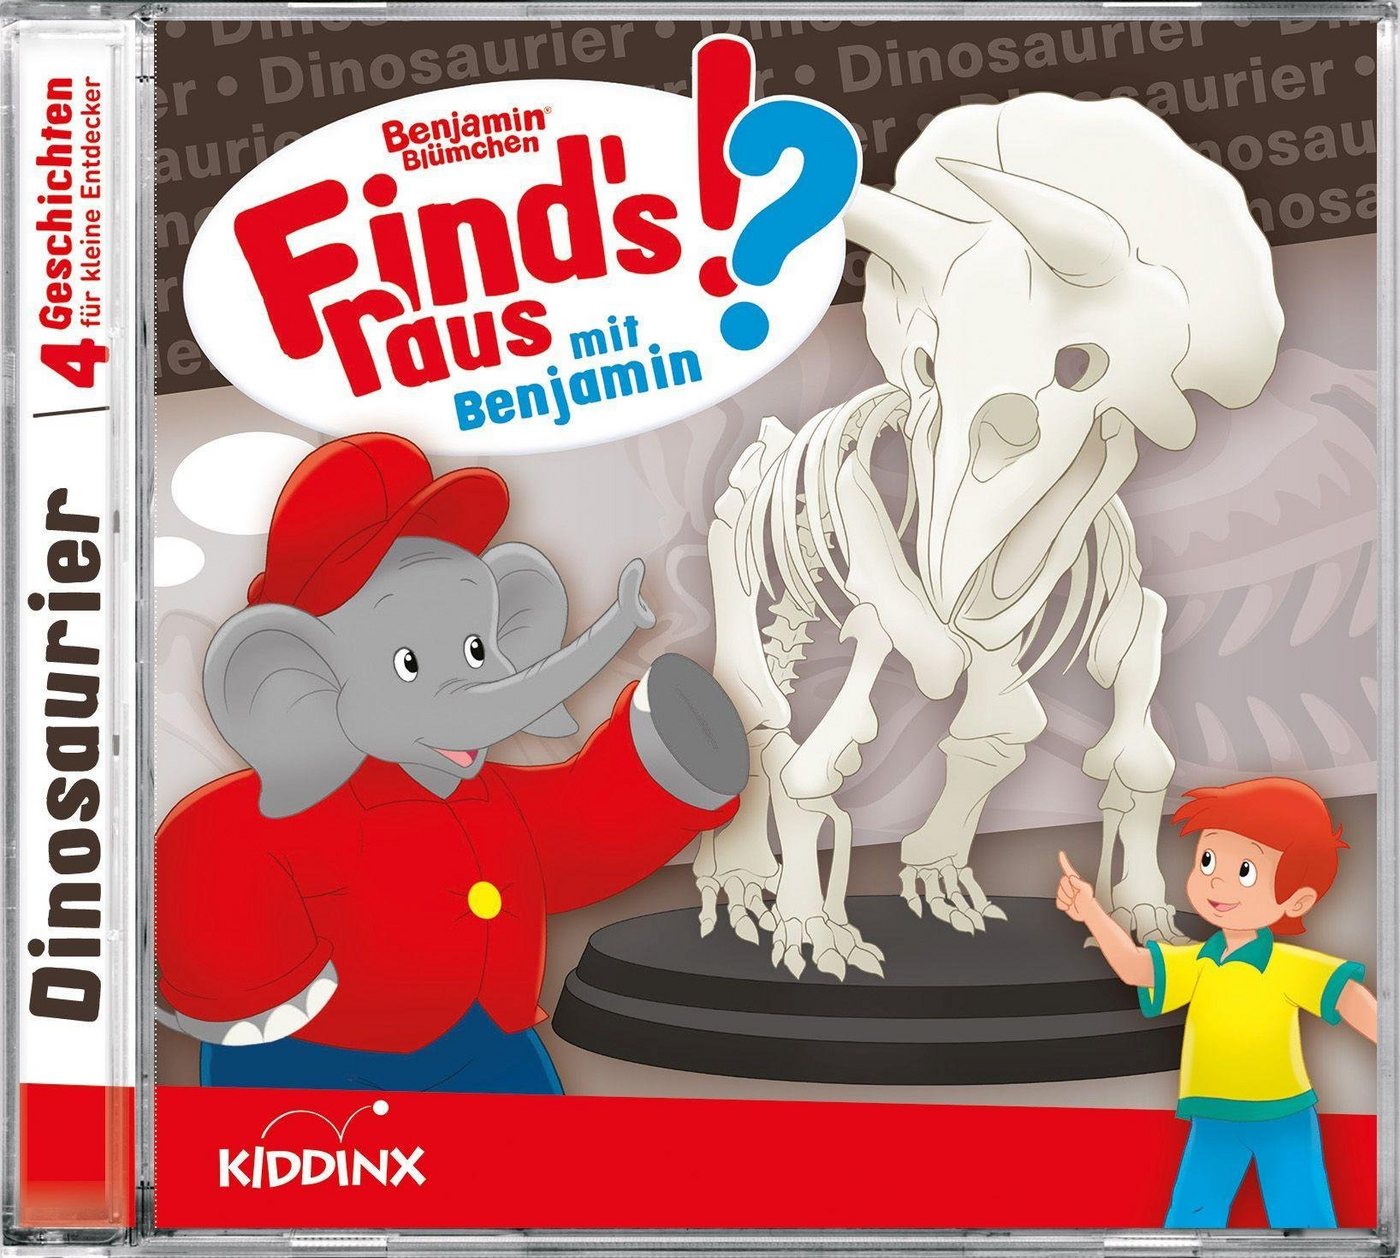 Kiddinx Hörspiel-CD Benjamin Blümchen Finds raus: Dinosaurier von Kiddinx